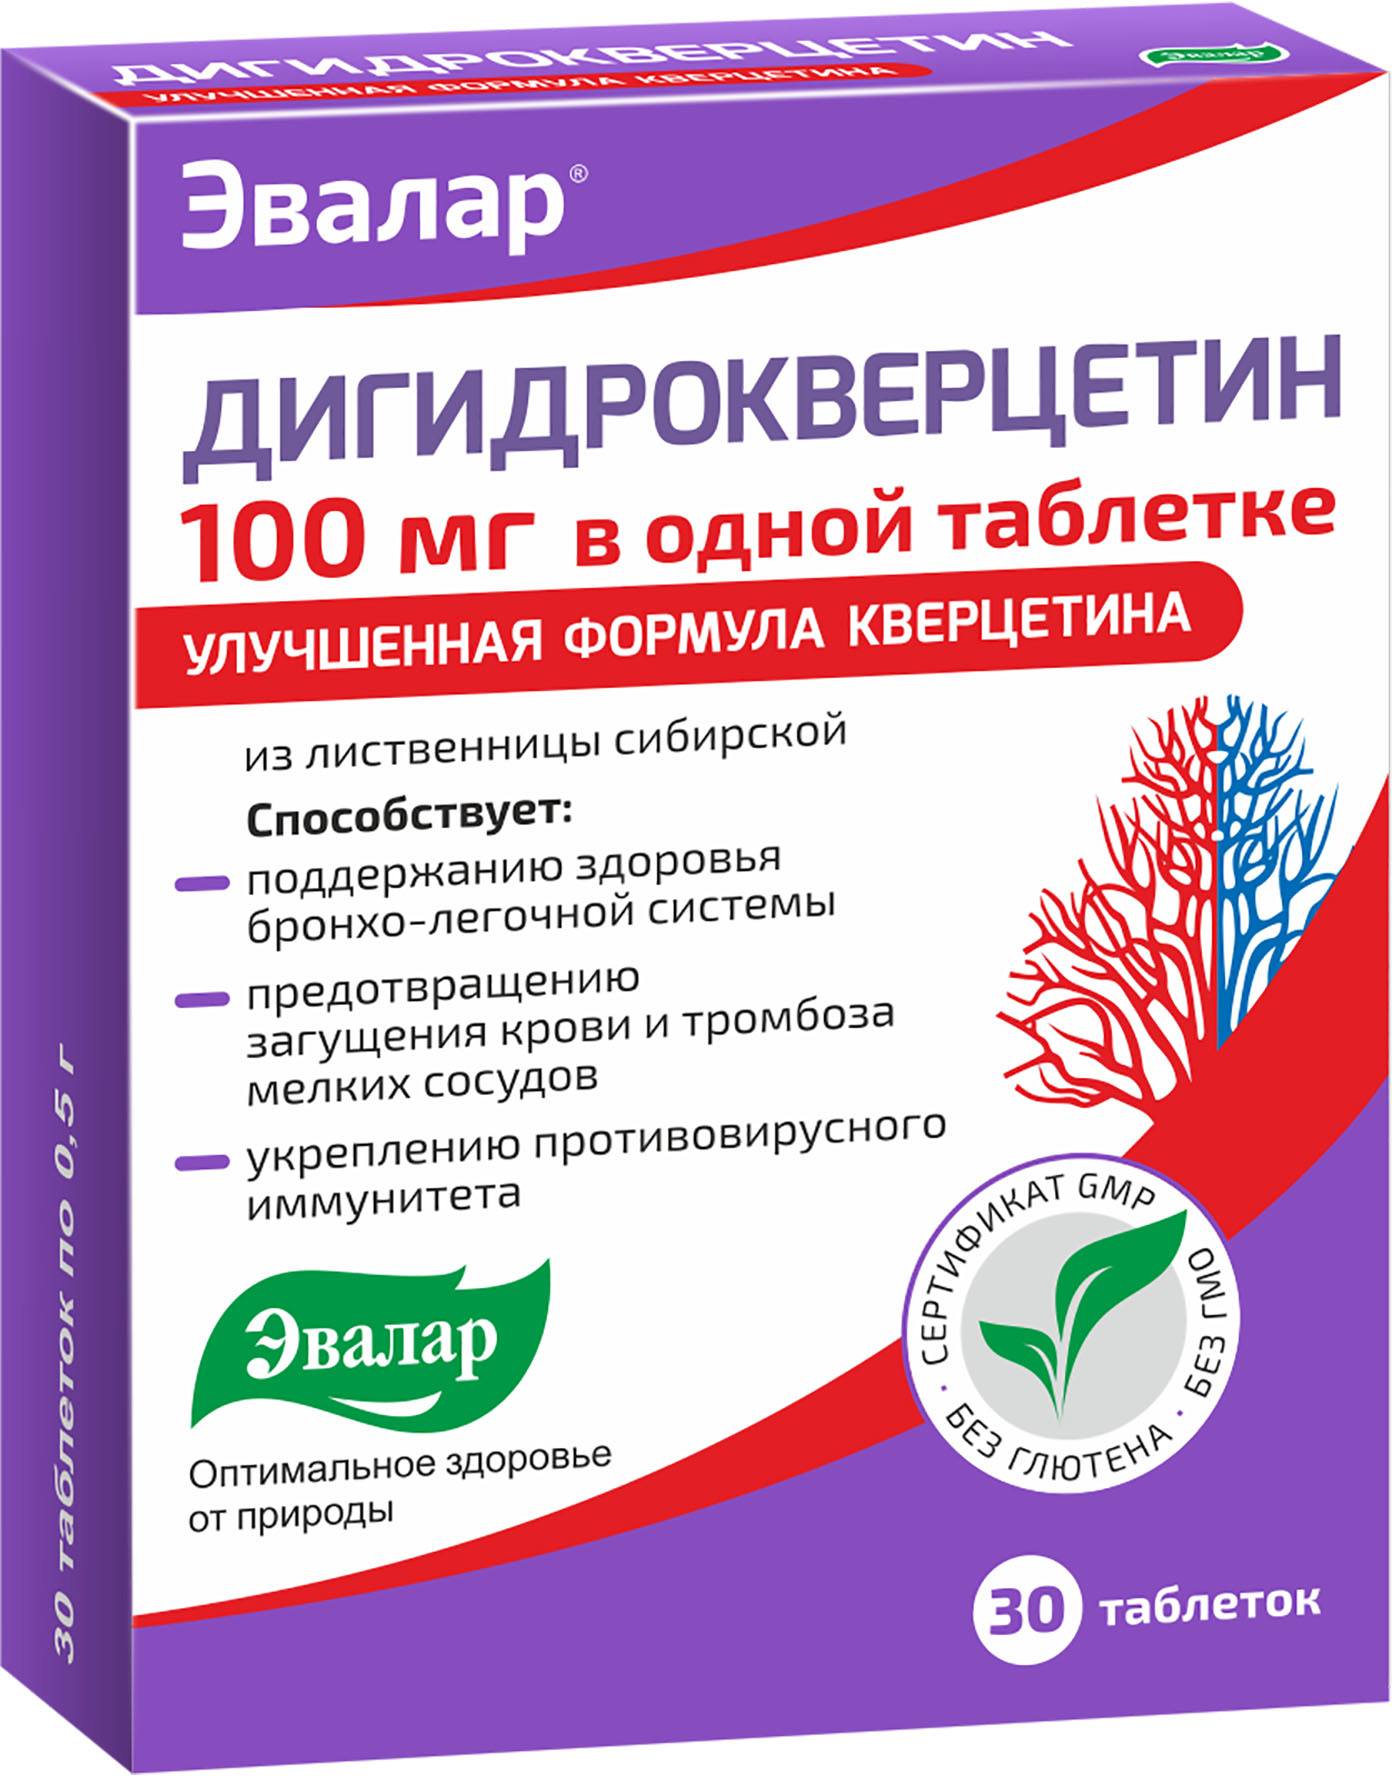 Дигидрокверцетин 100 мг, таблетки 0.5 г, 30 шт. дигидрокверцетин таблетки 100 шт